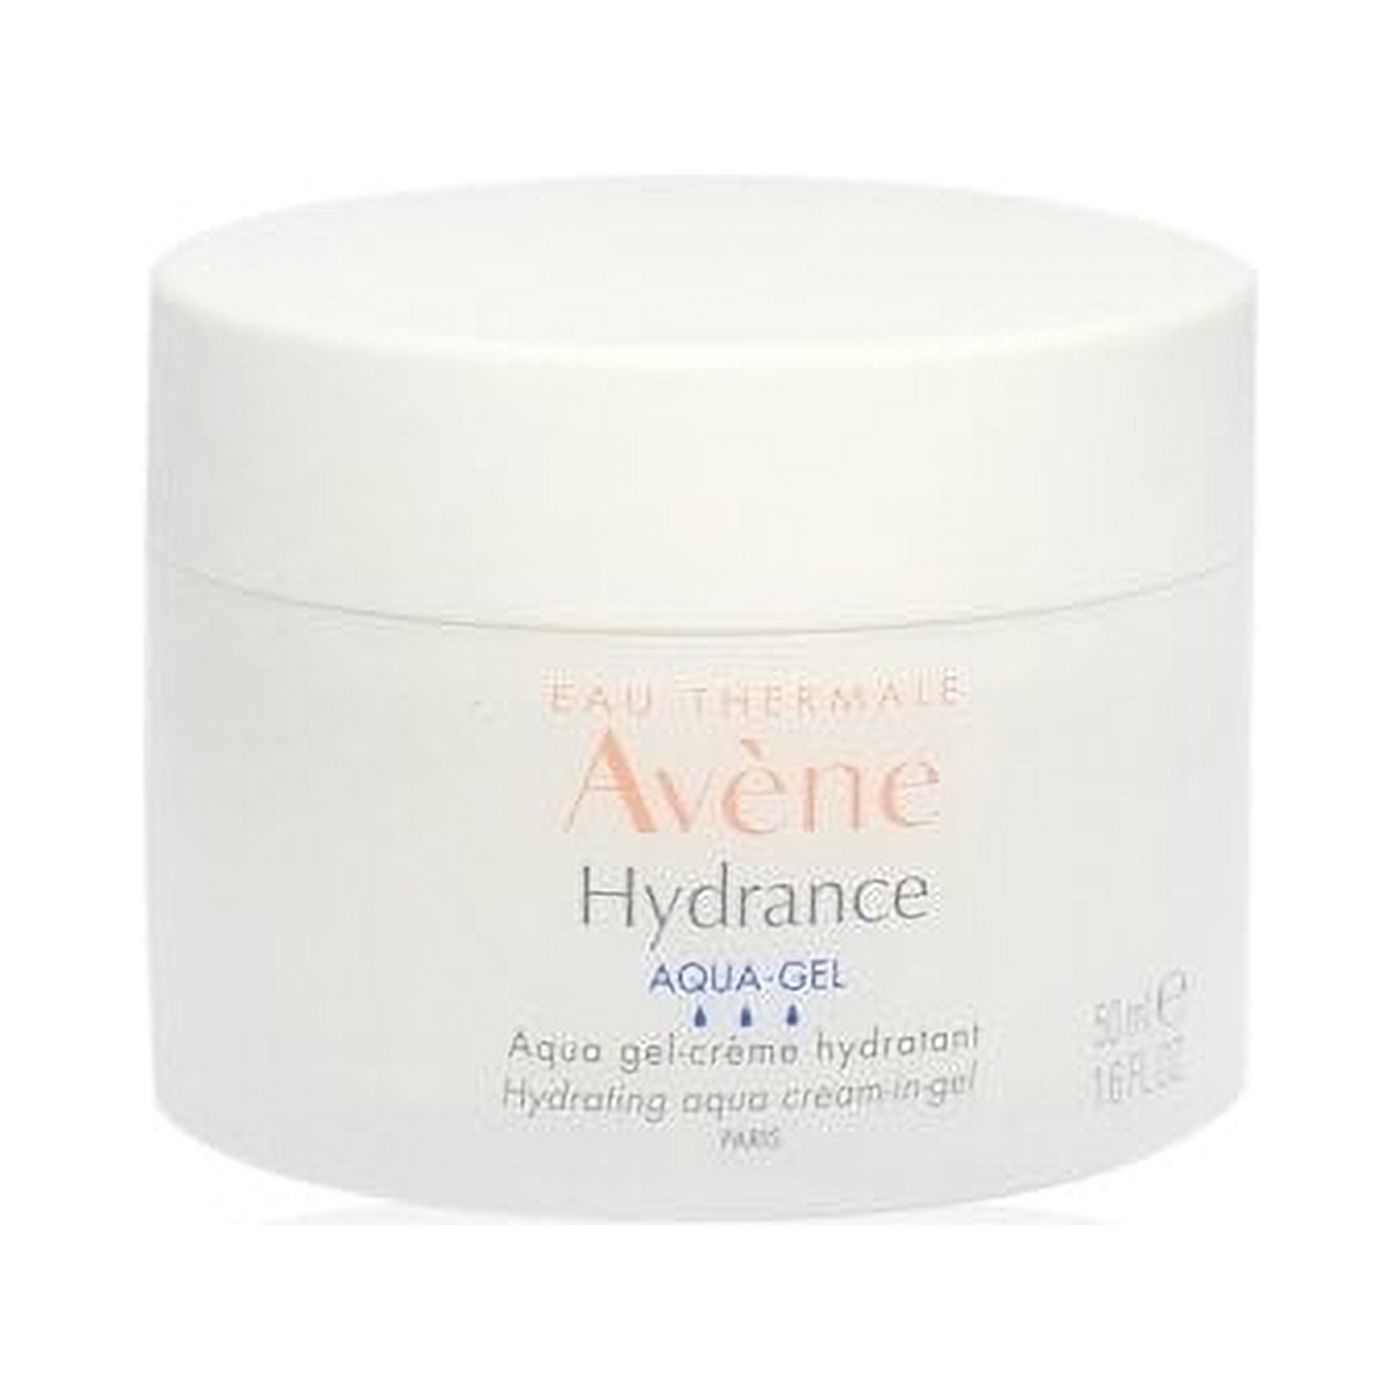 Eau Thermale Avene Hydrance Hydrating Aqua Cream-in-Gel, 24 Hour Hydration, Antioxidant Protection, 1.6 fl.oz. - image 1 of 4